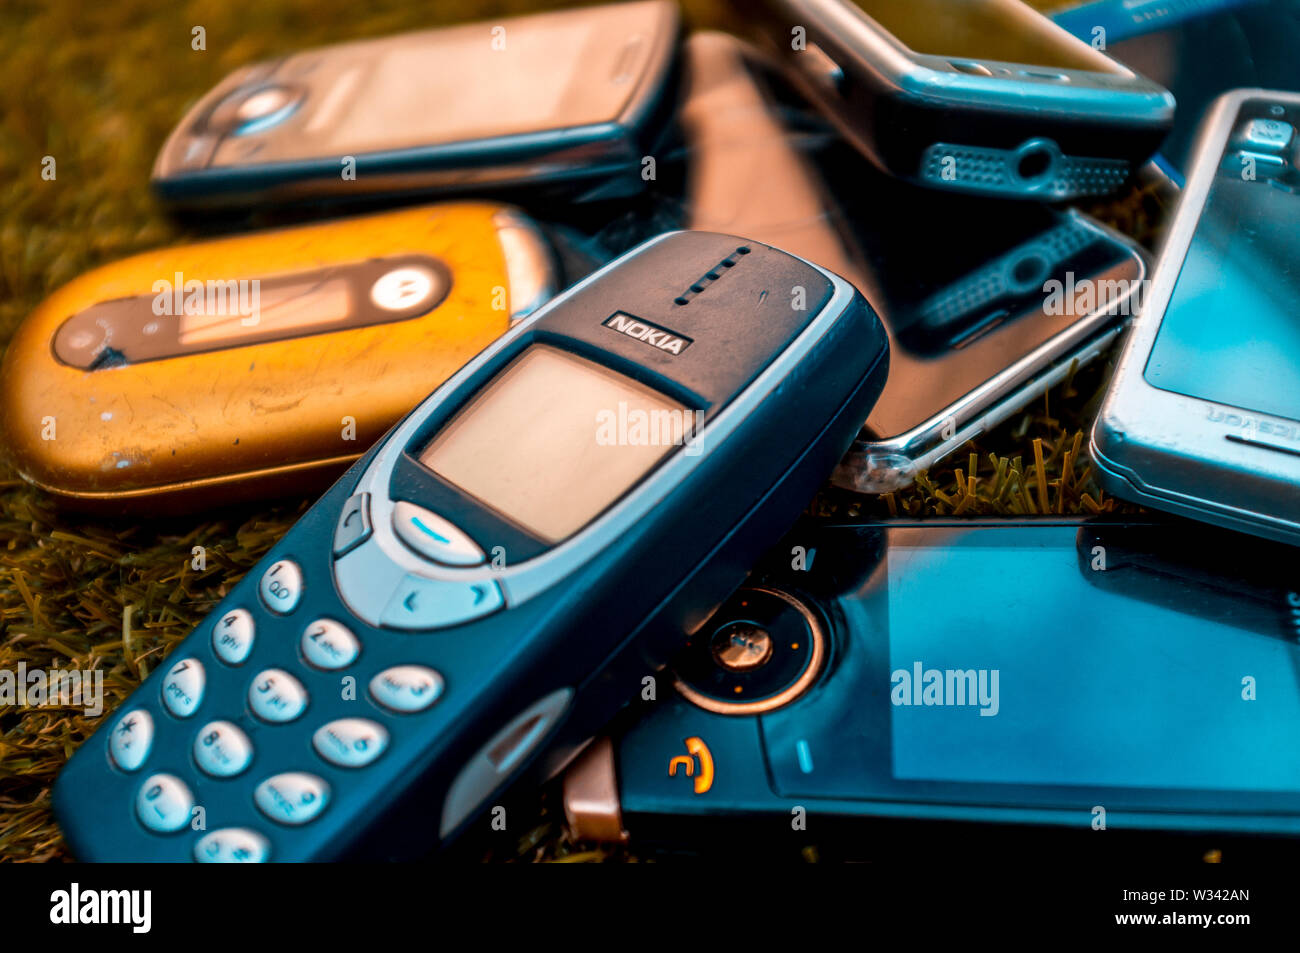 Selezione di vecchi telefoni cellulari dalla metà del 2000's prima della introduzione di smartphone Foto Stock